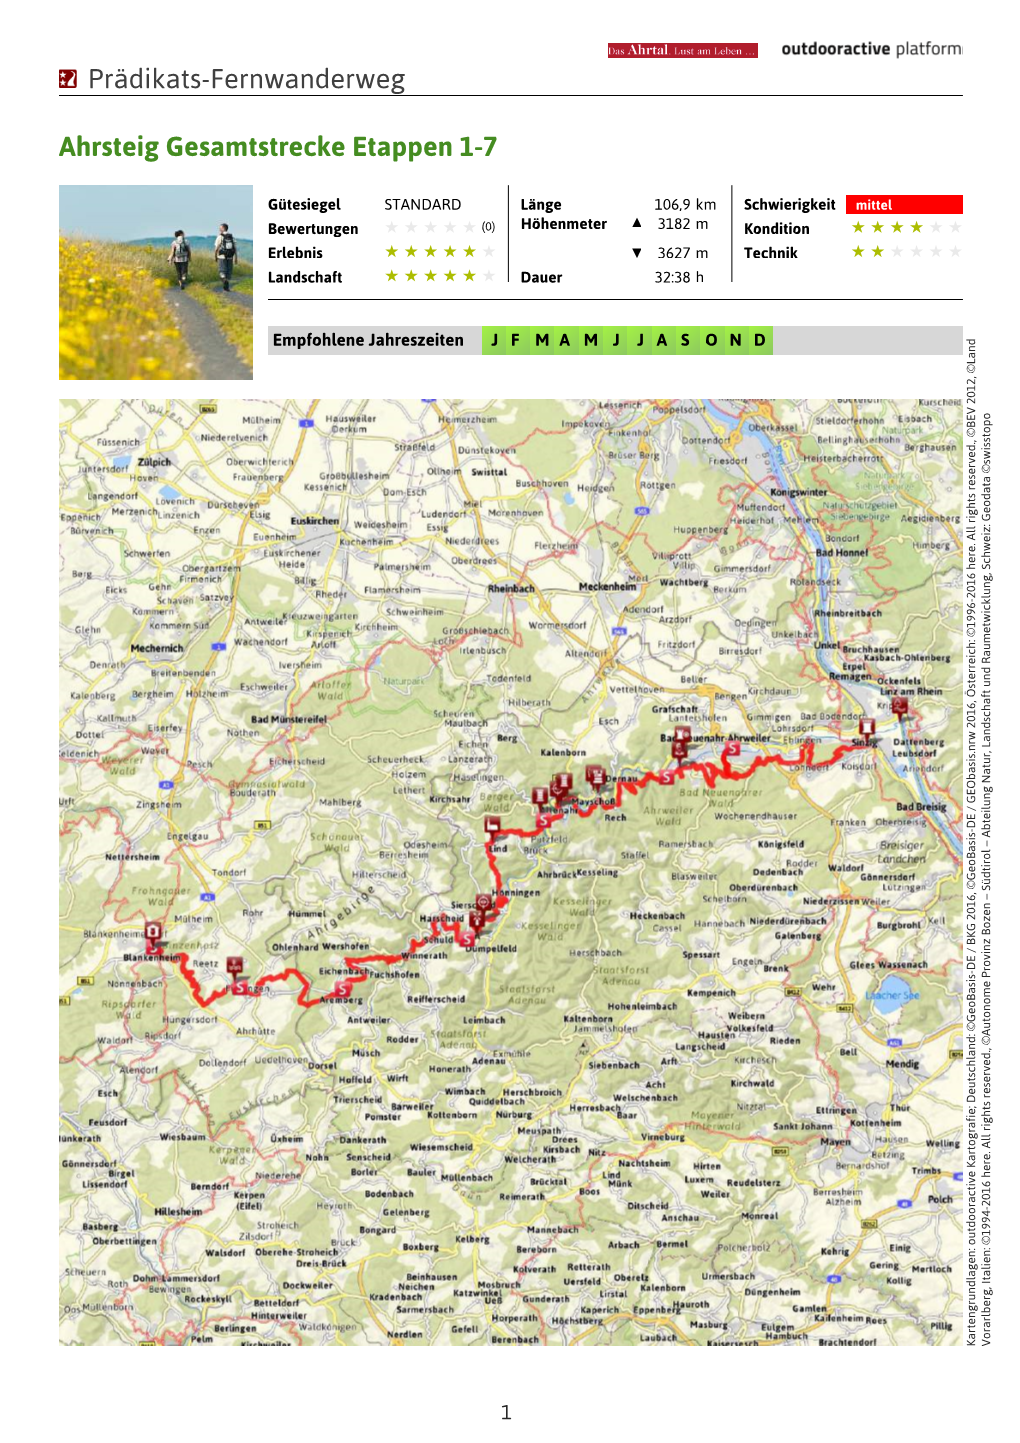 Prädikats-Fernwanderweg Ahrsteig Gesamtstrecke Etappen